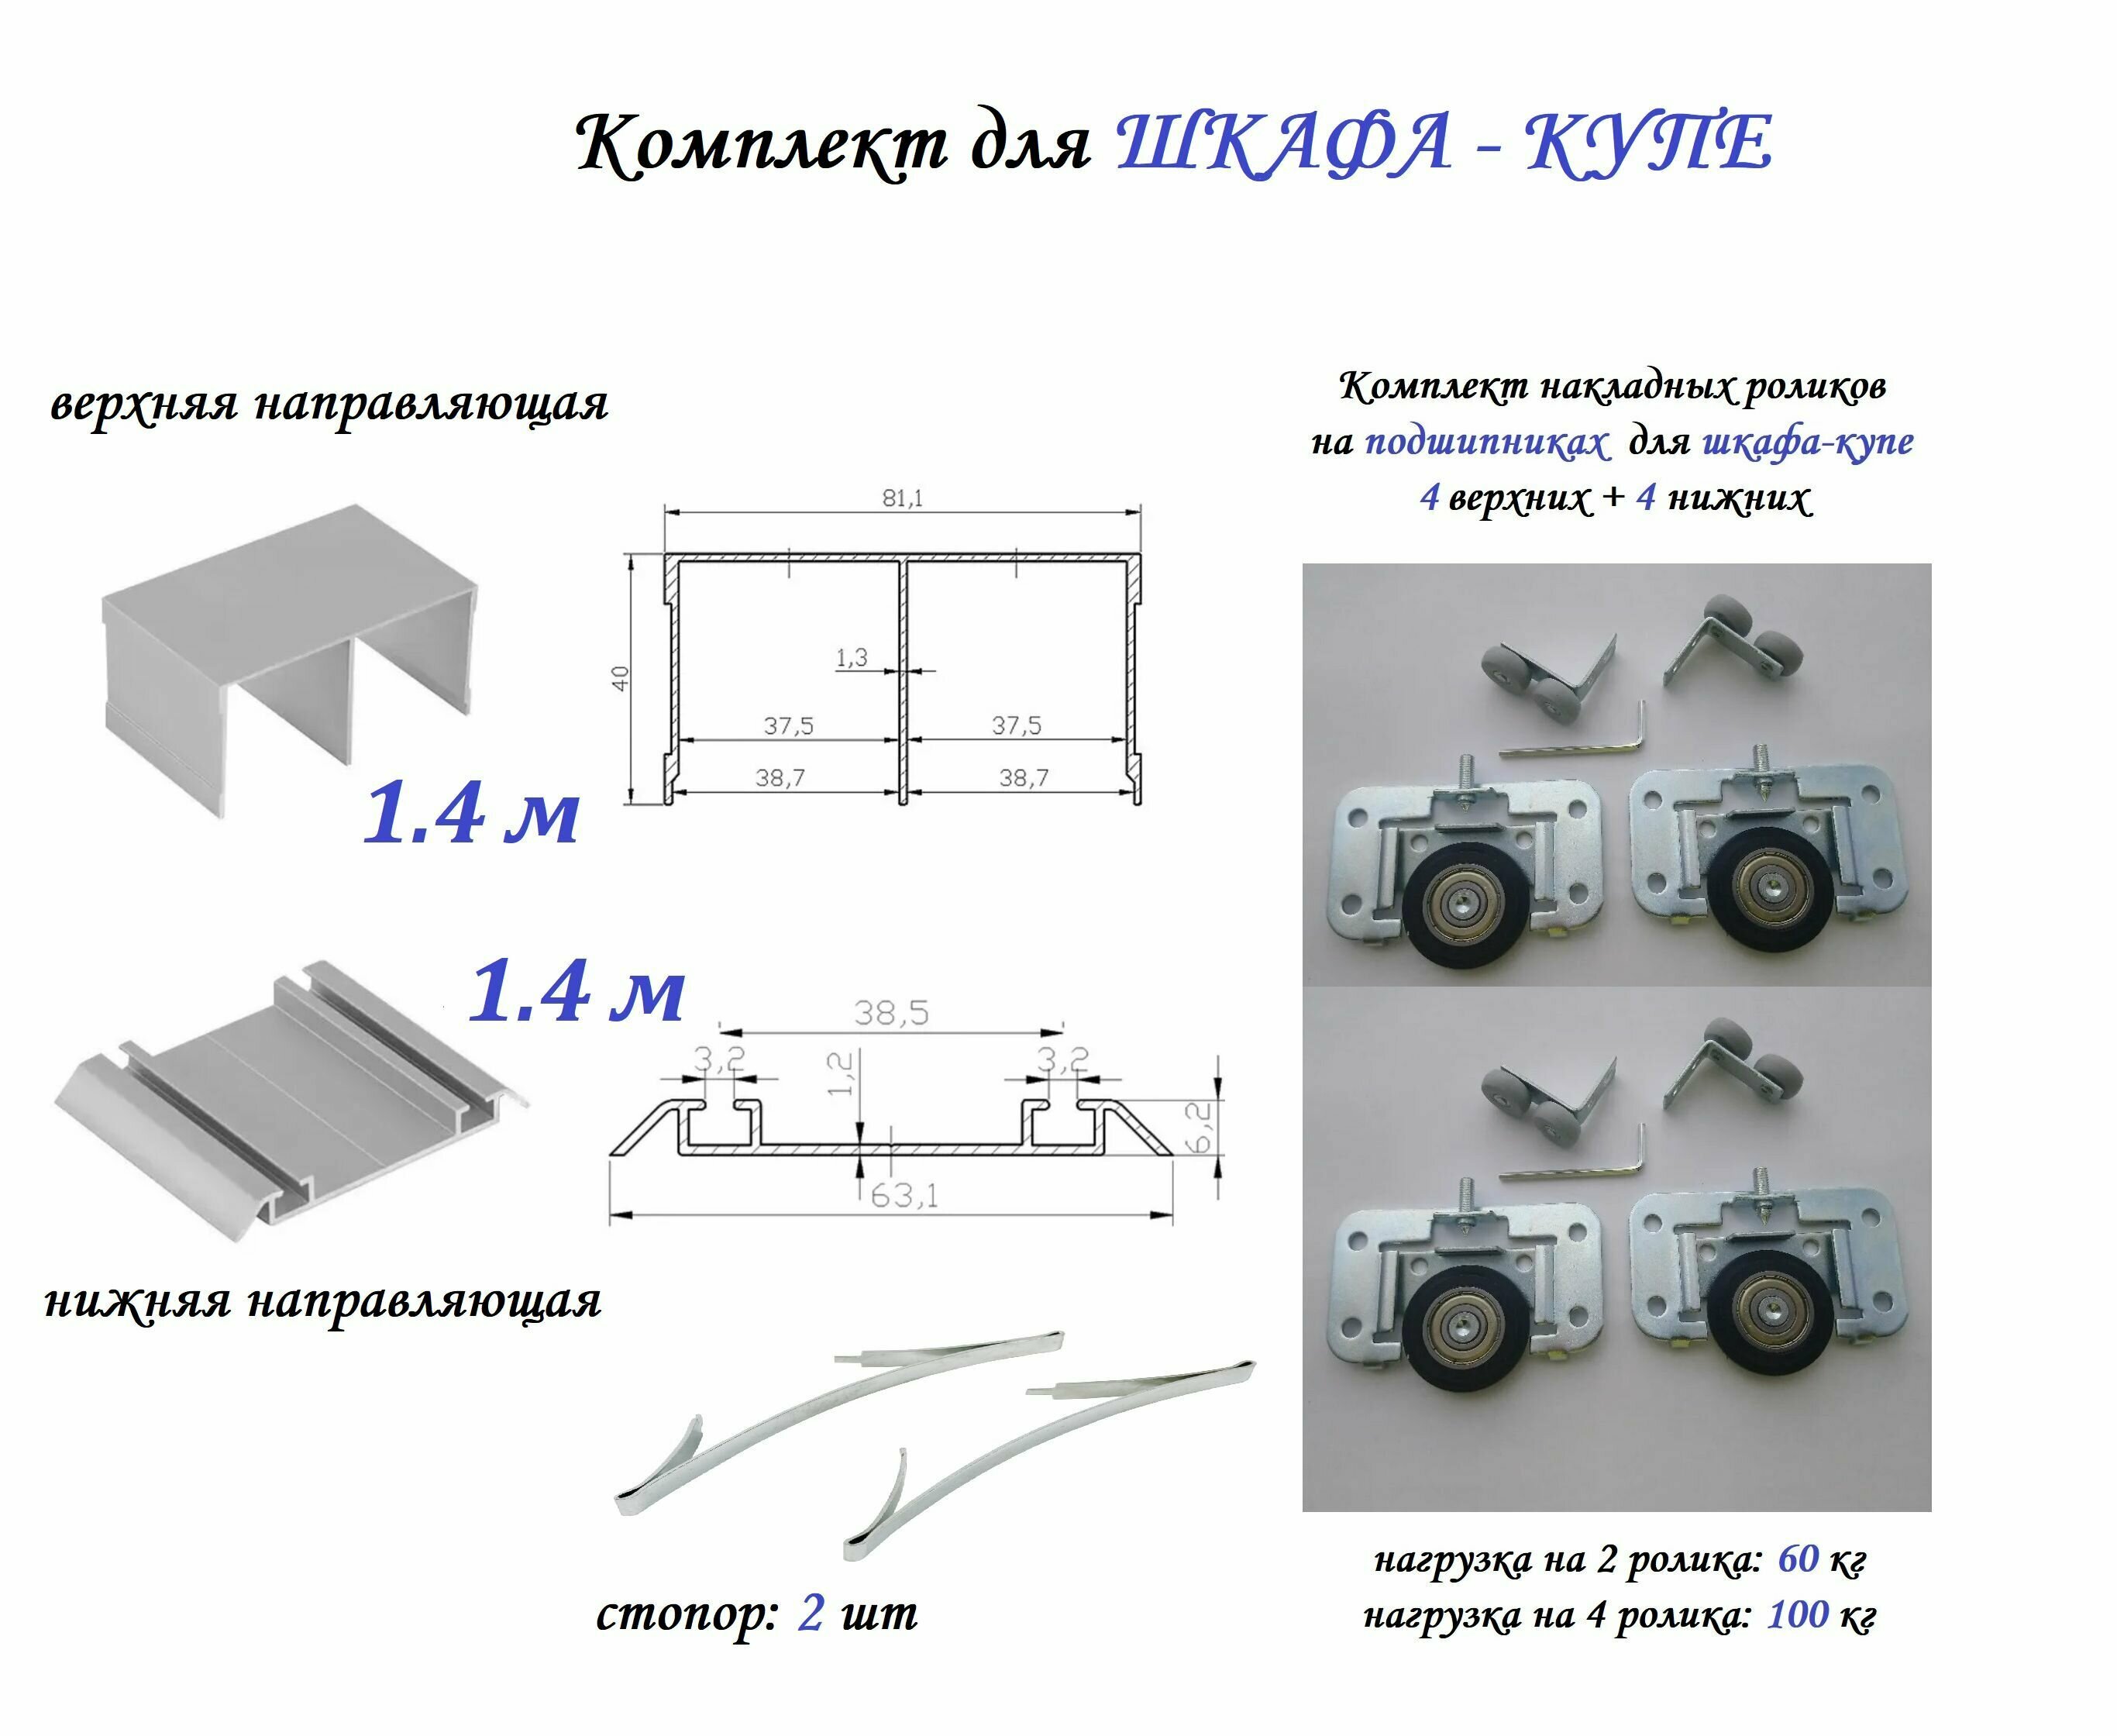 Комплект для шкафа-купе: накладные ролики на подшипниках (100кг) (ЛДСП 16-19мм) (4 верхних/ 4 нижних) + направляющая верхняя 1.1м + направляющая нижняя 1.1м + 2 стопора серебристый